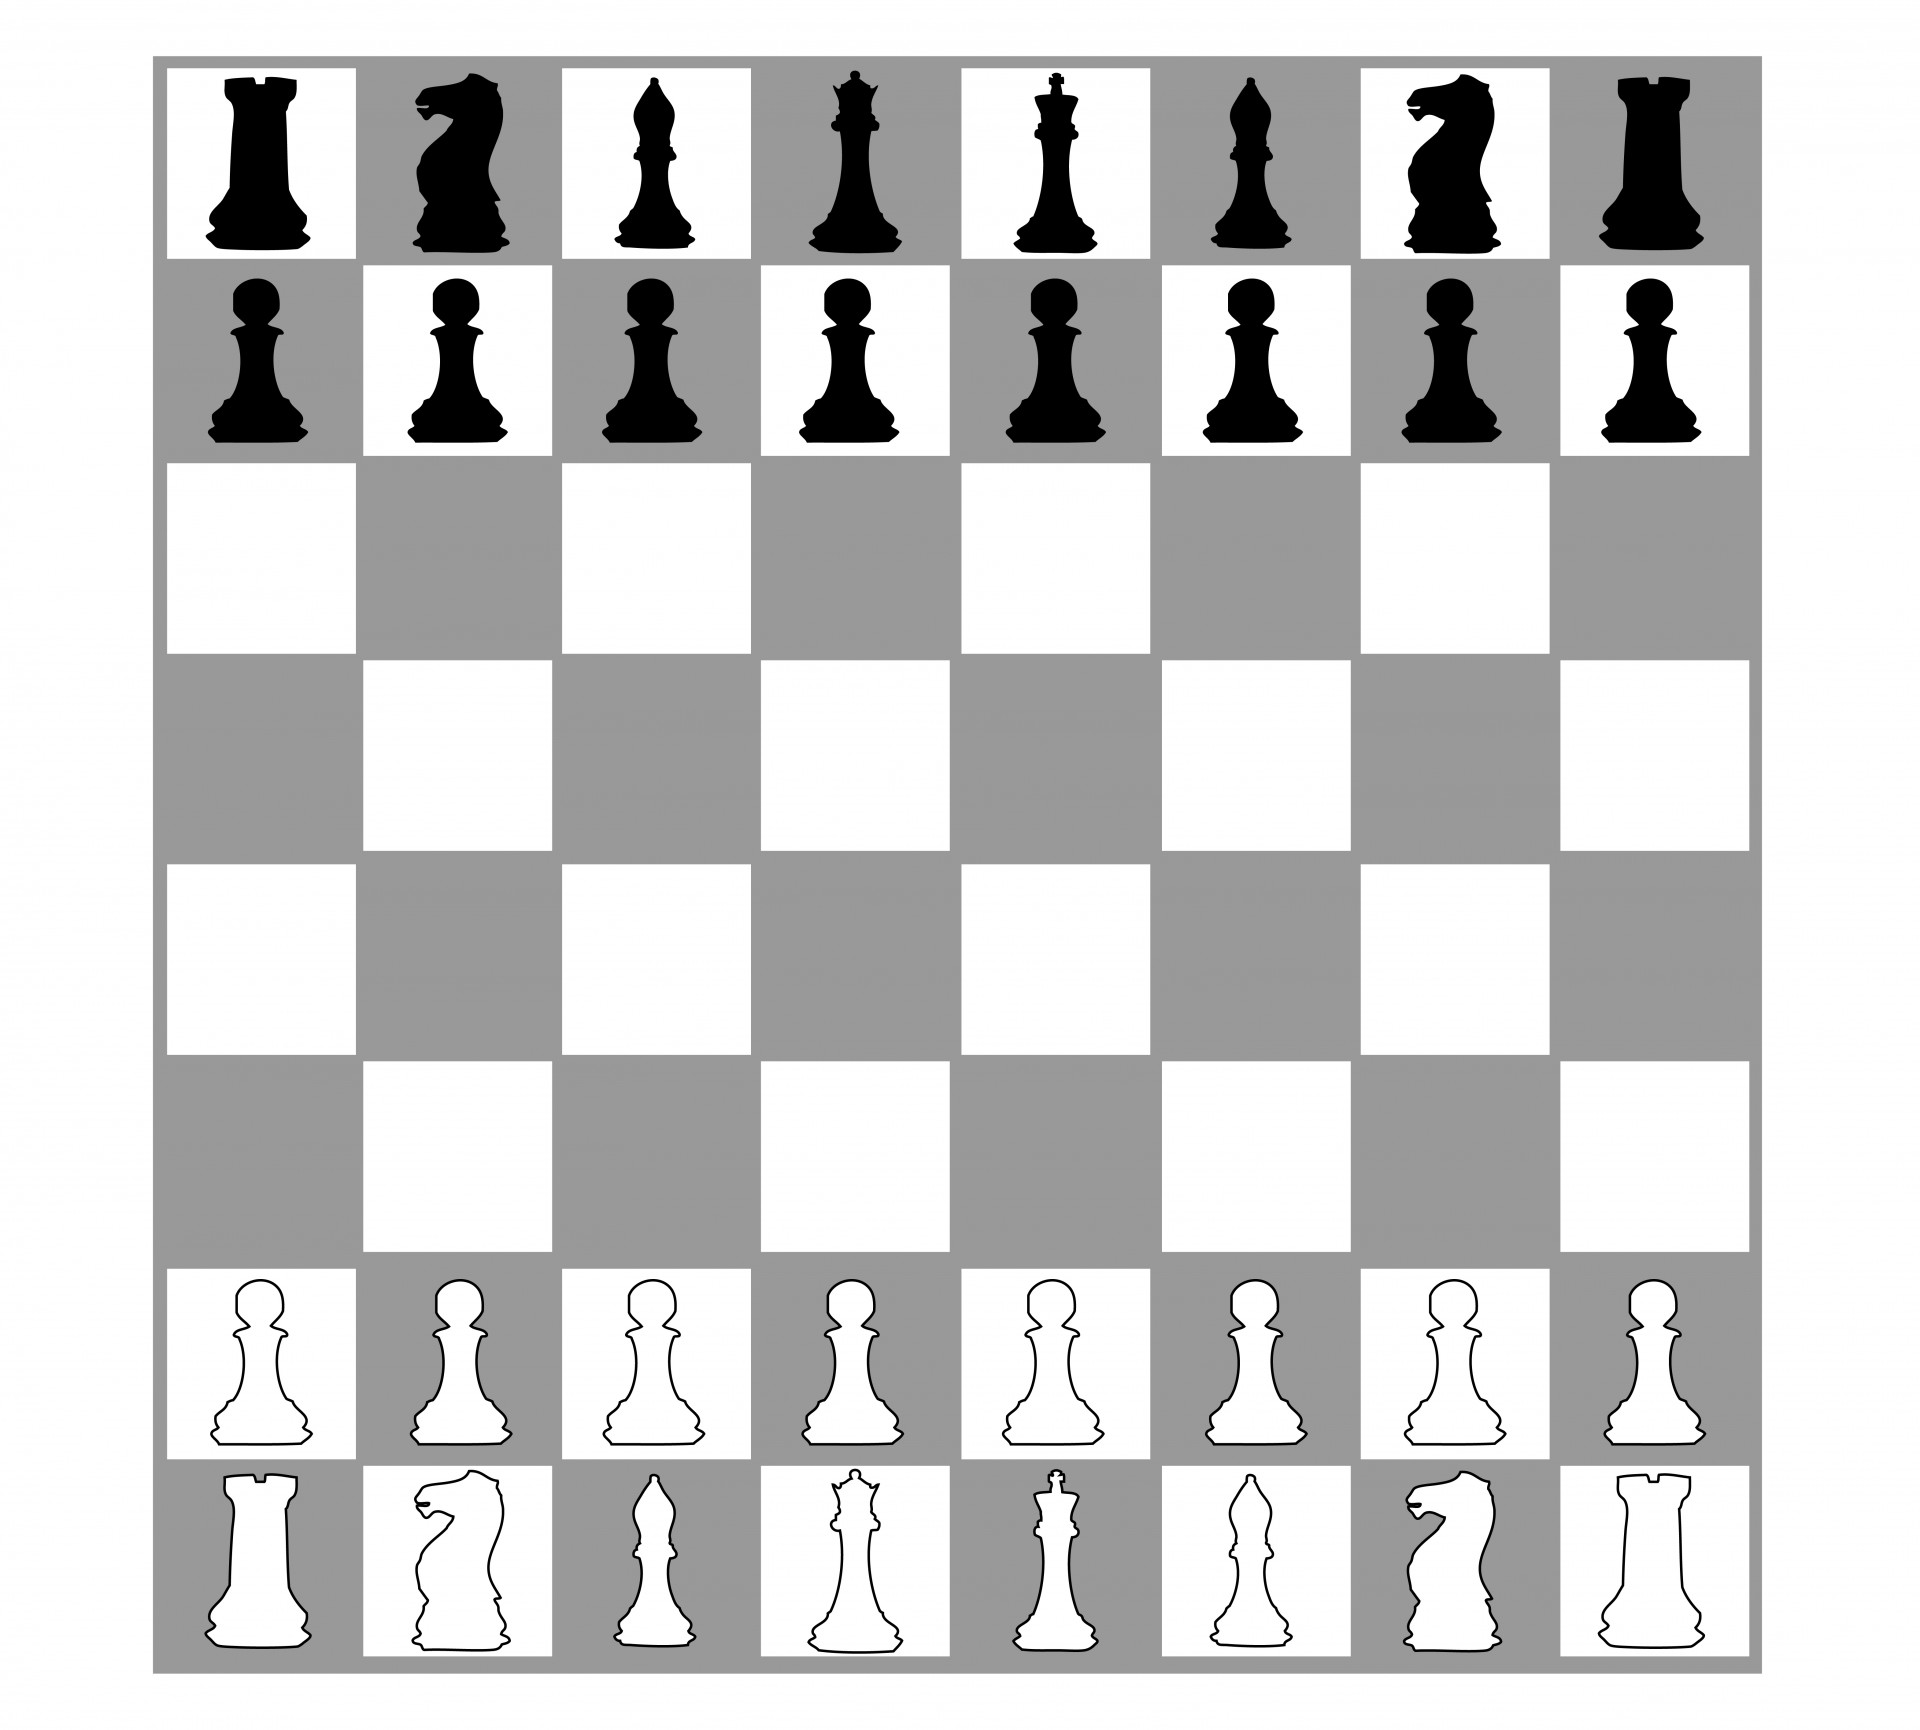 Chesschess boardpieceschess pieceschess.